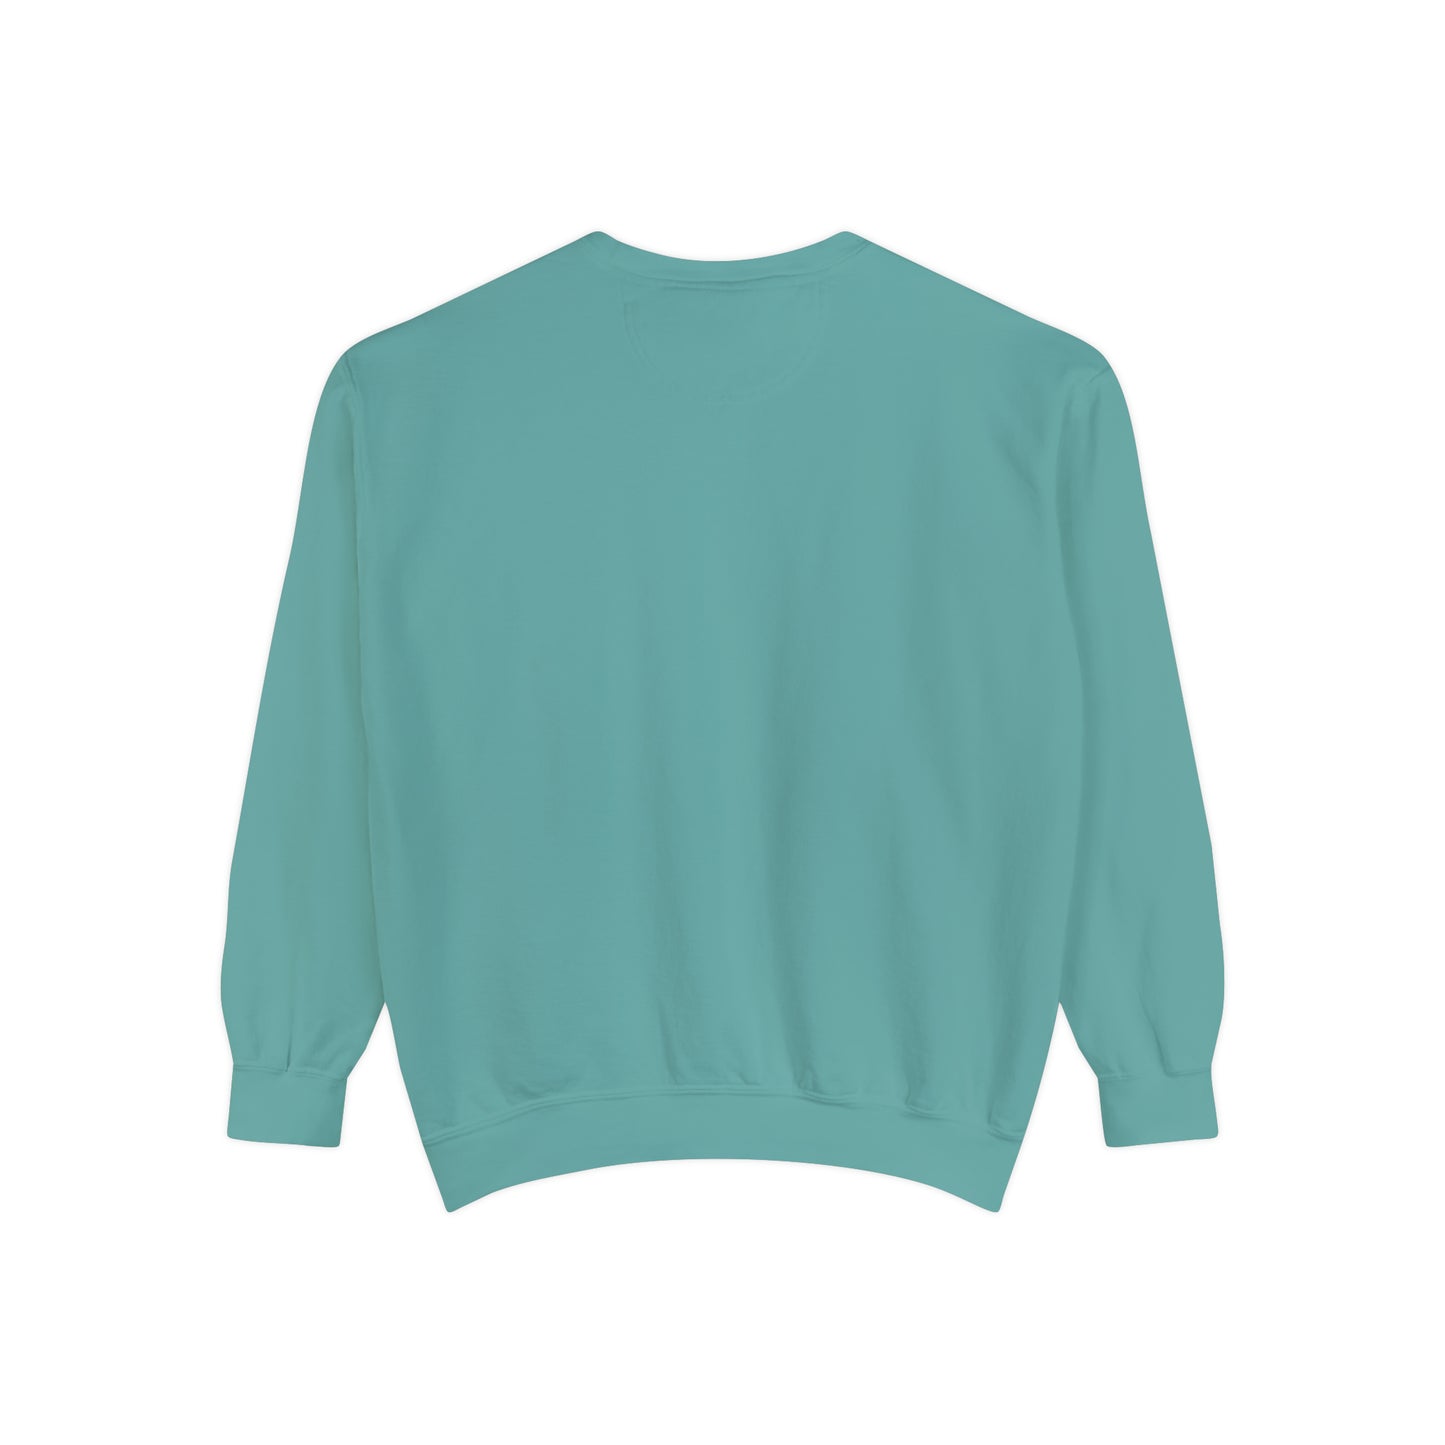 Always Cold Comfort Colors Unisex Sweatshirt